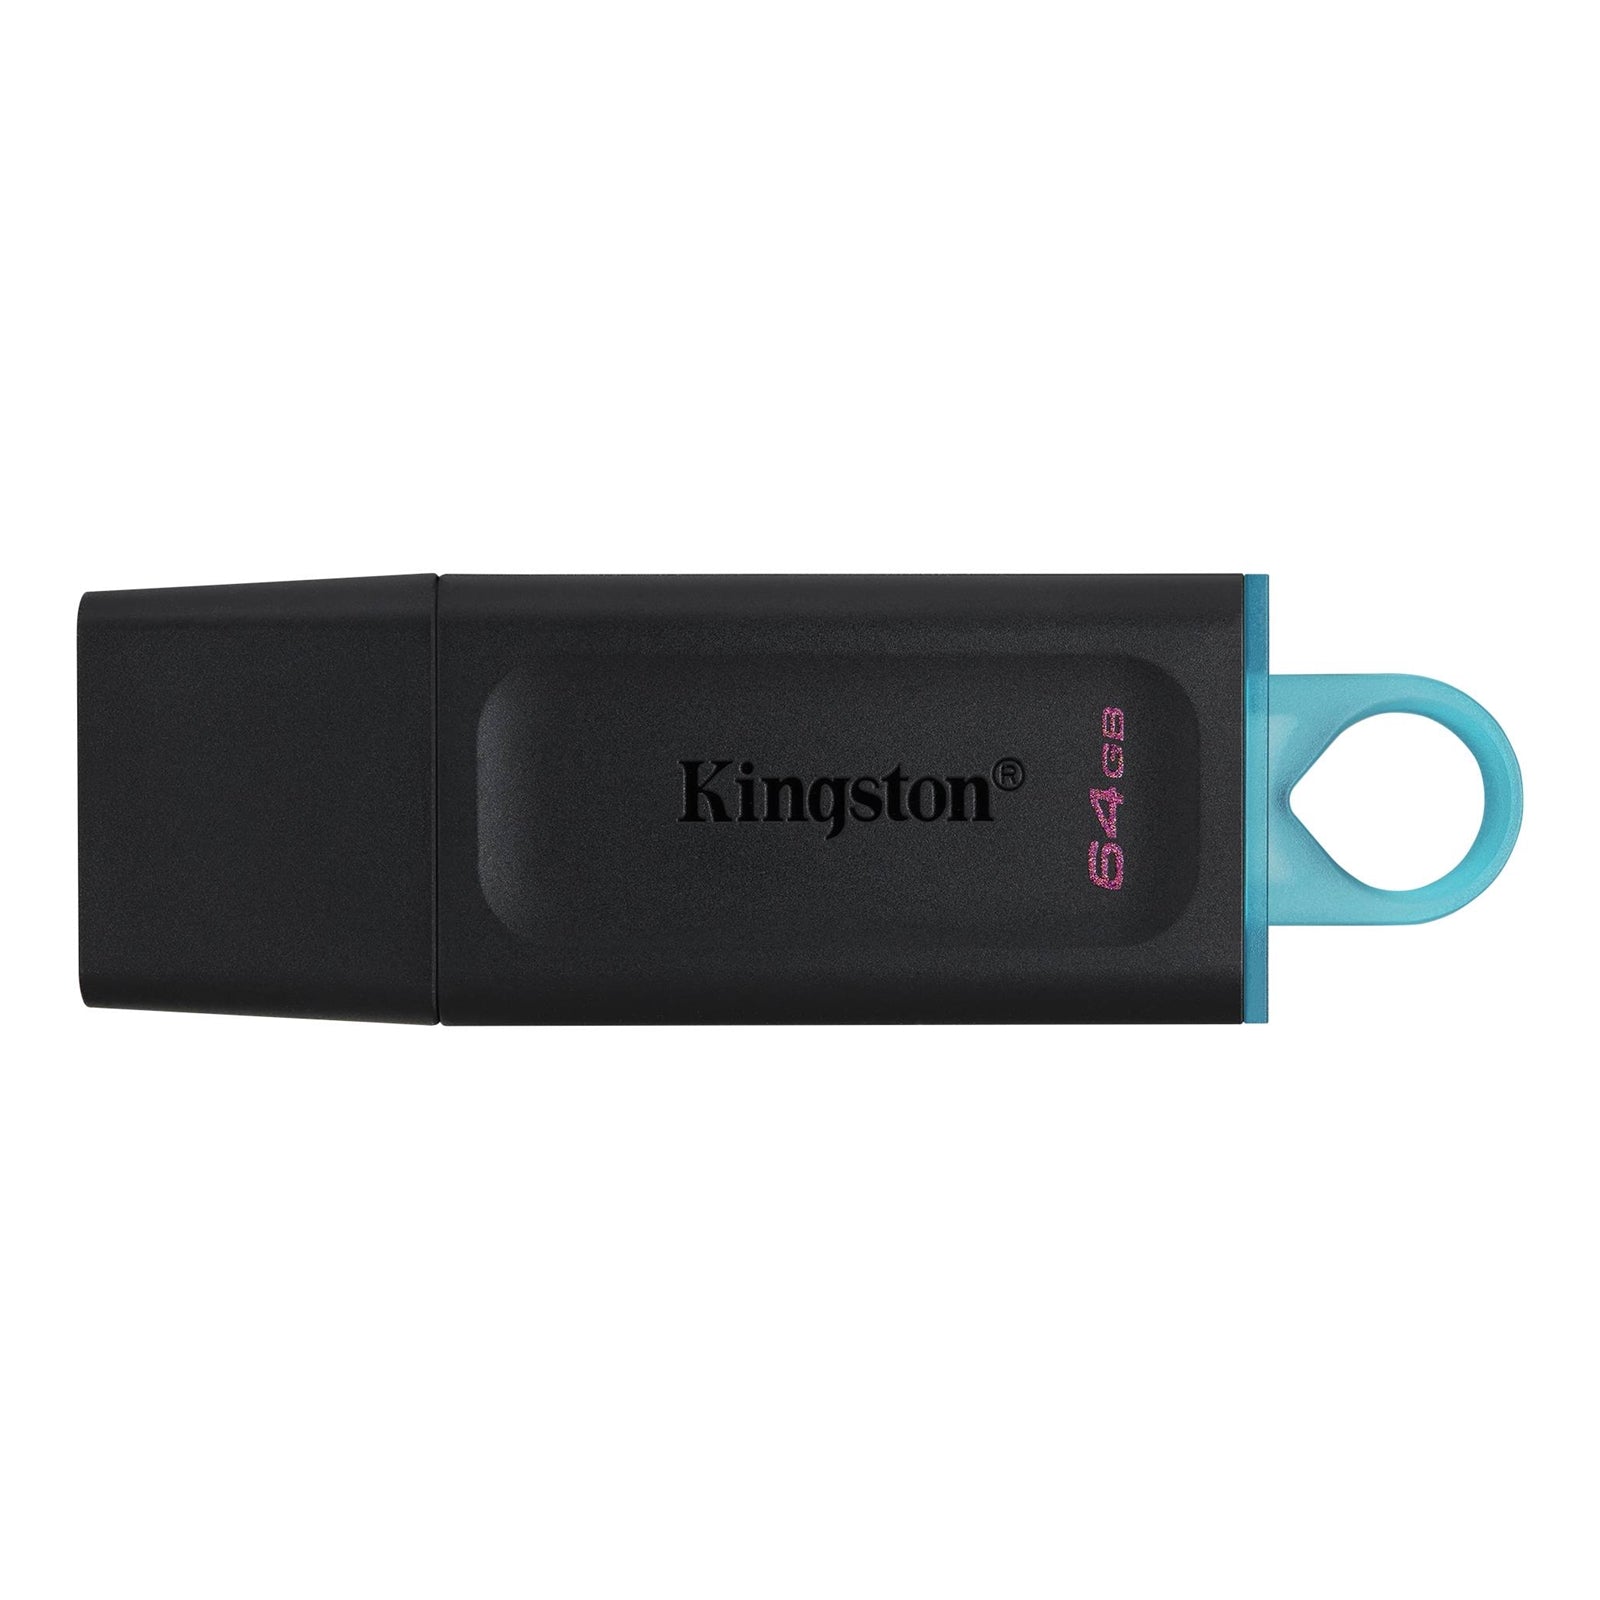 Kingston Exodia 64GB High-Speed USB 3.2 Flash Drive - Black/Cyan